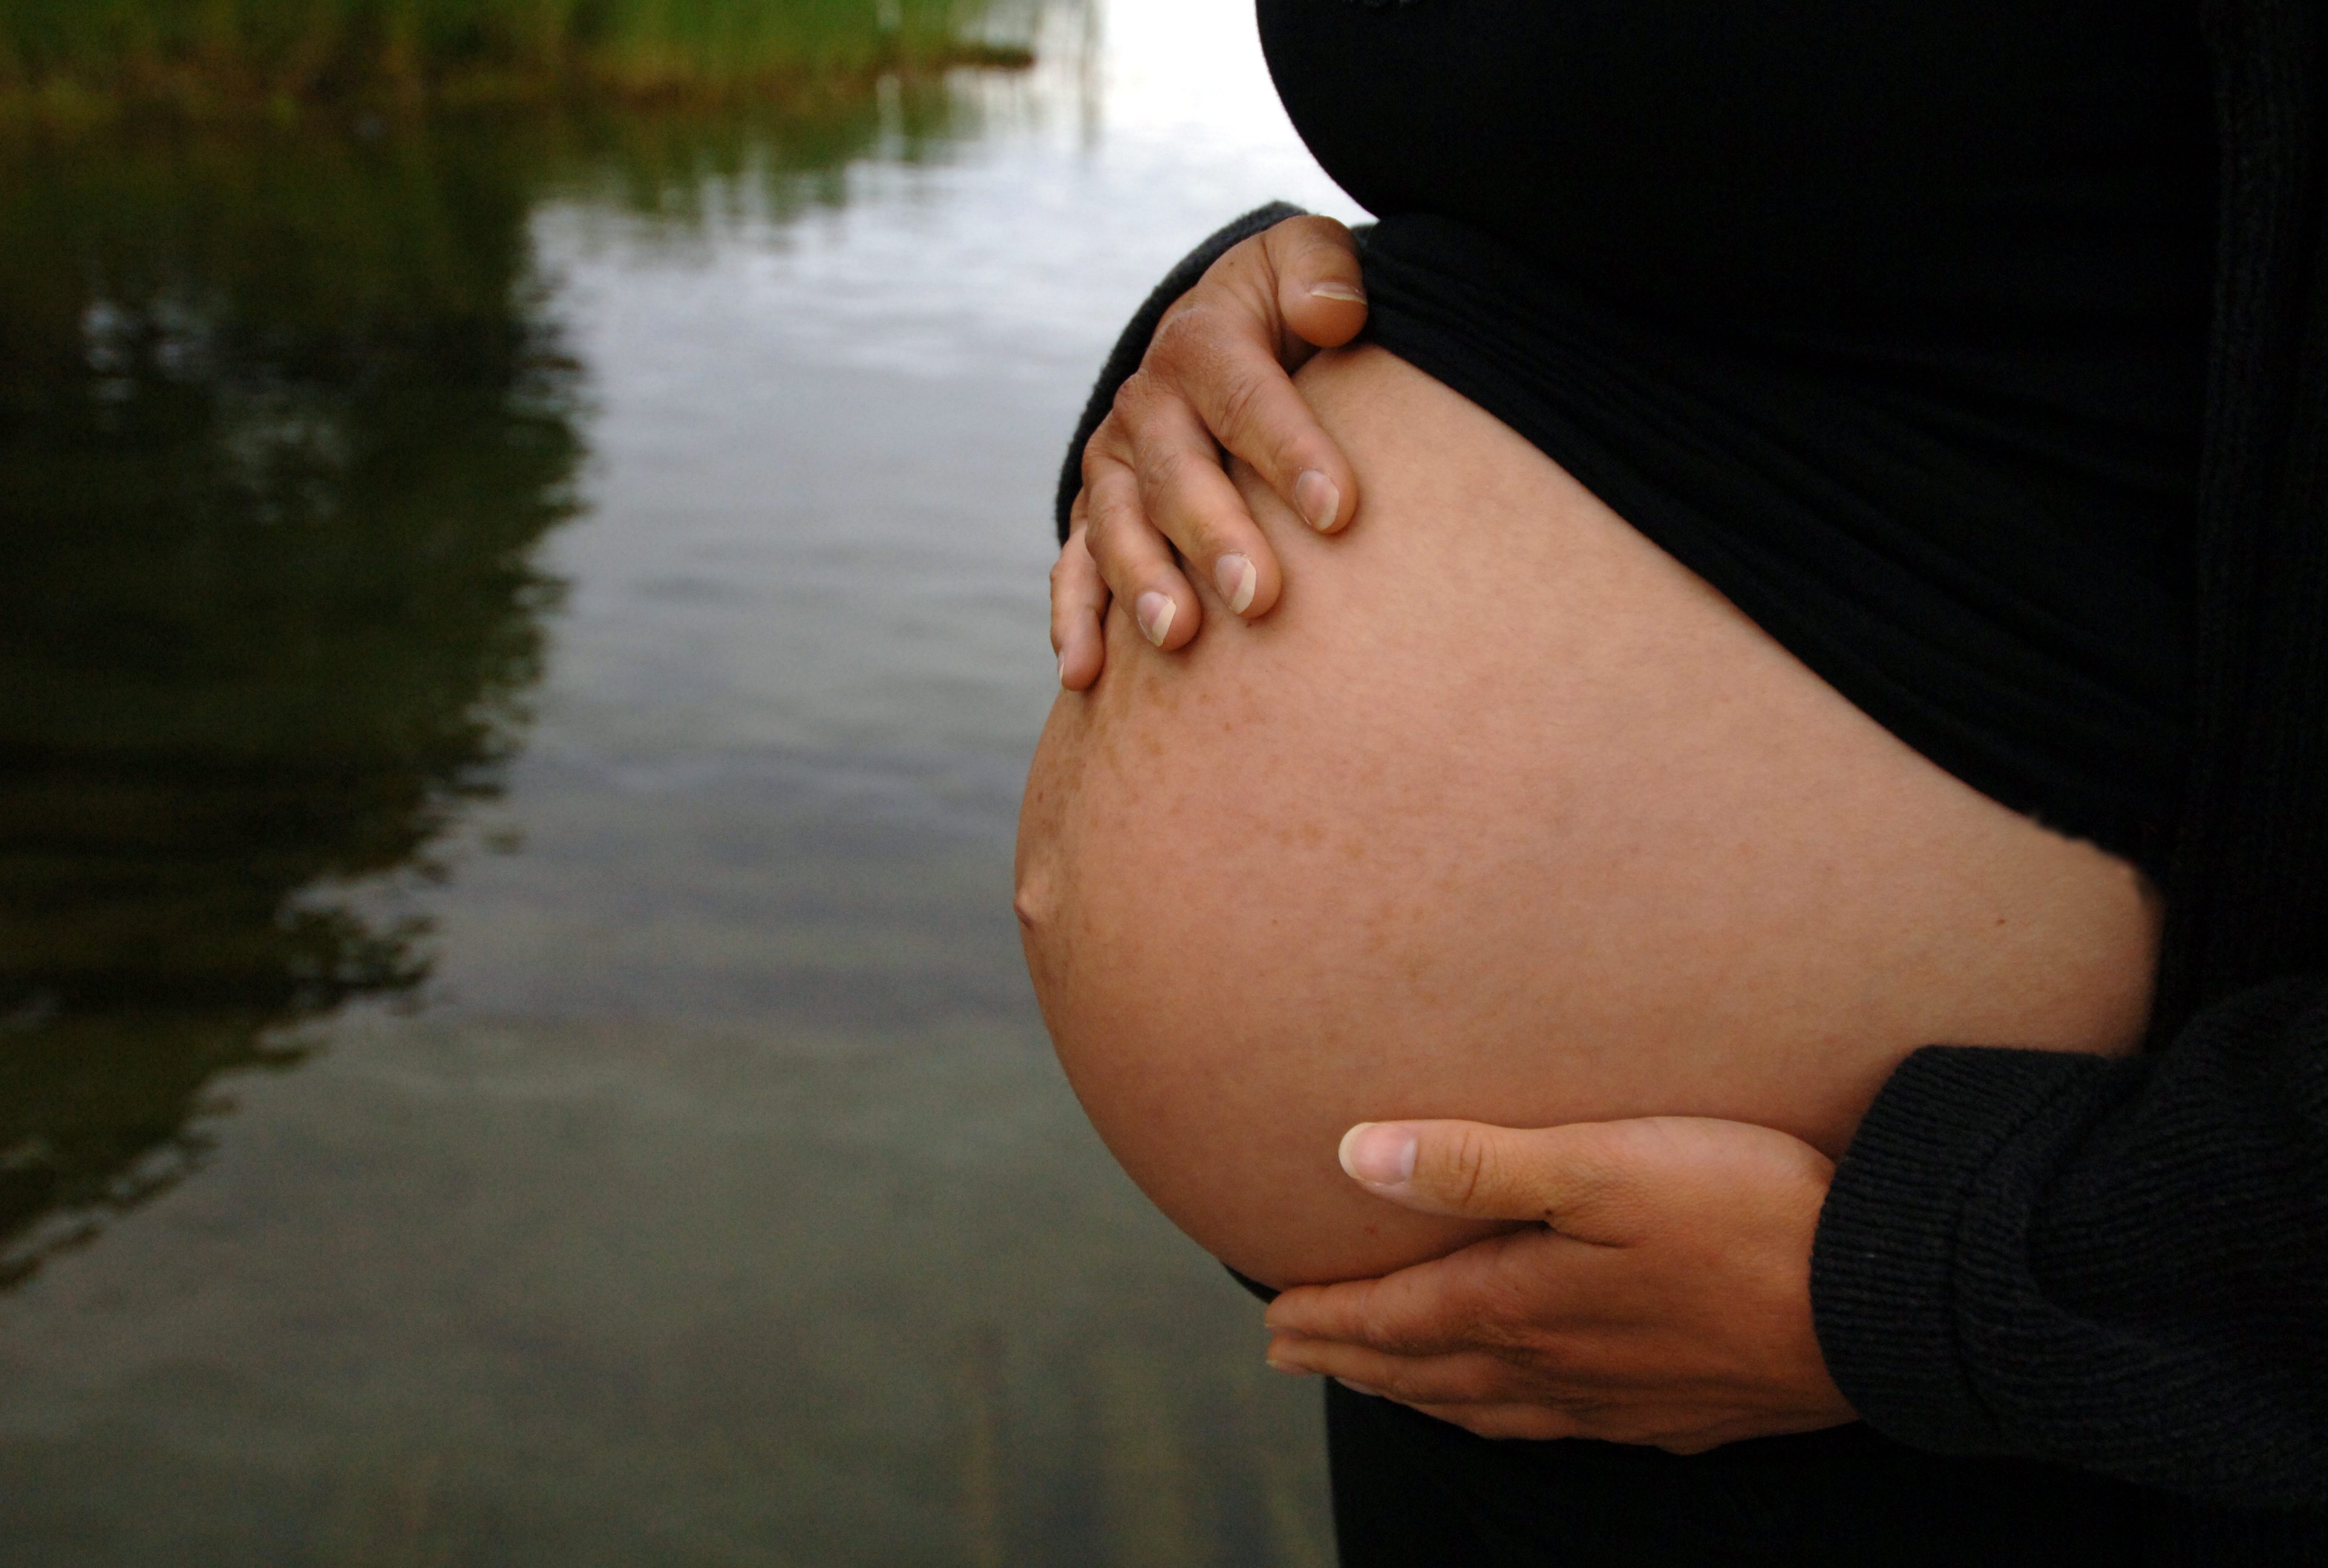 Födsel, Gravid, Förlossning, ovanligt